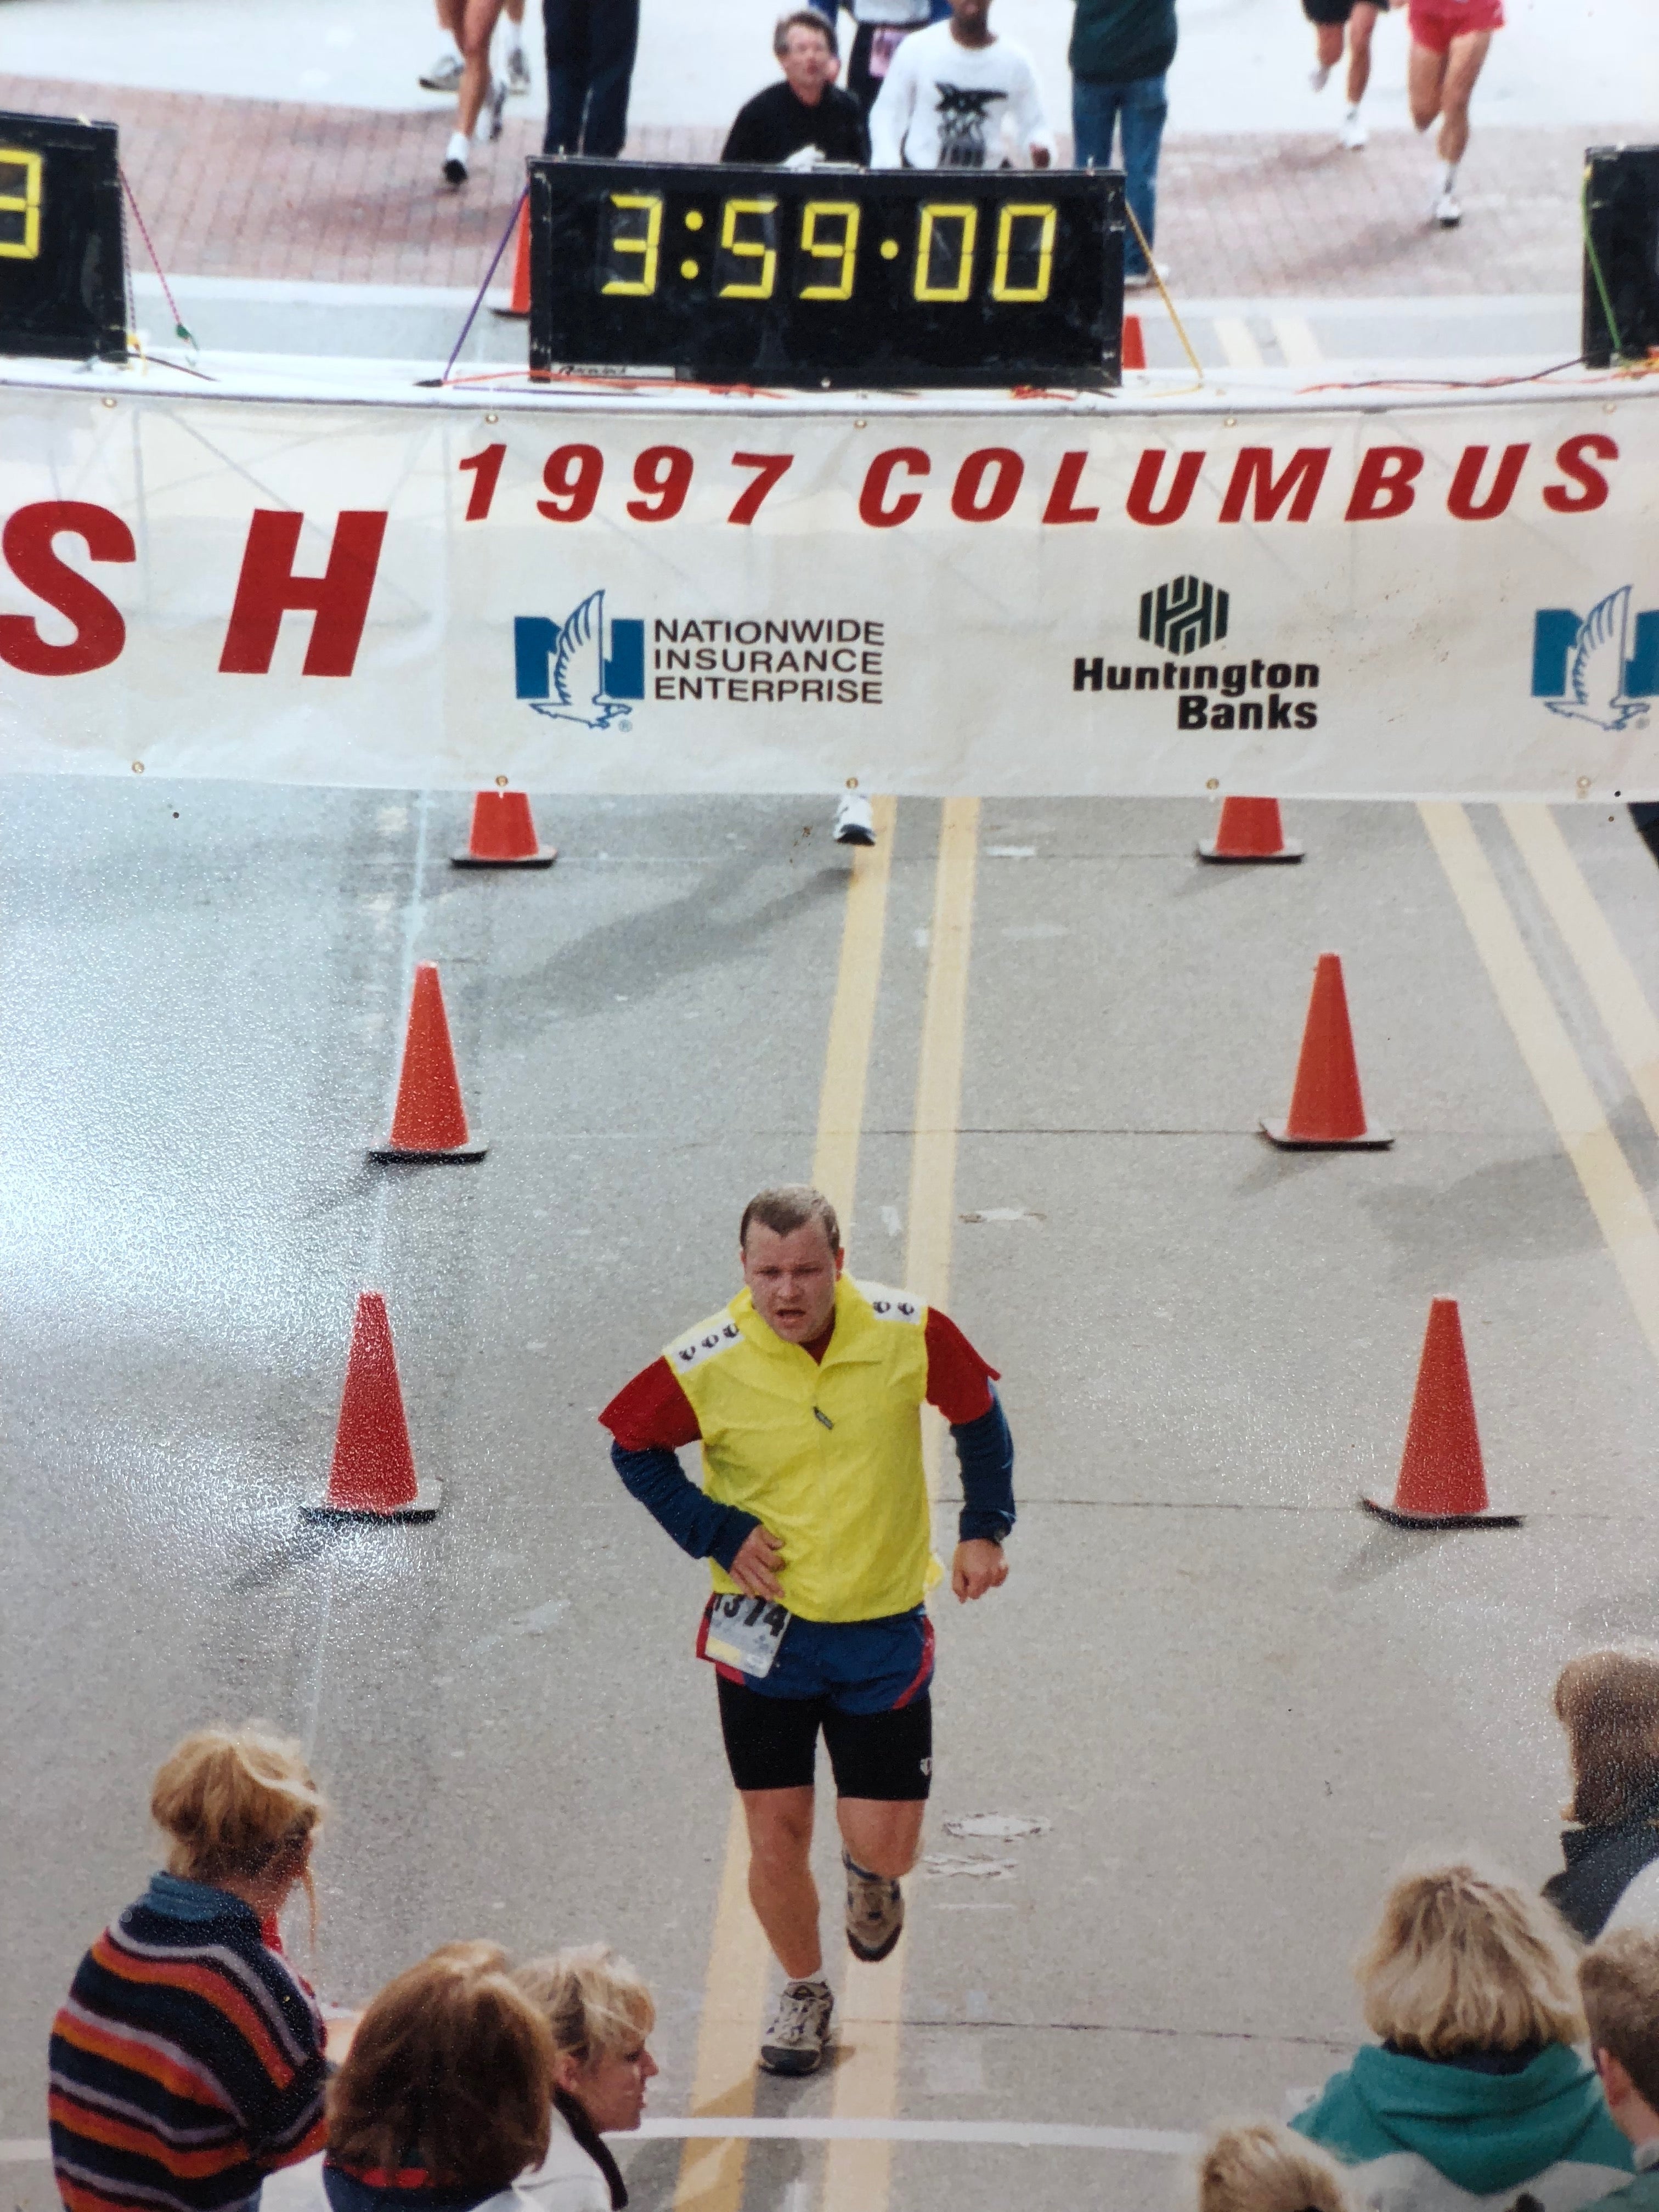 ic:  Finishing the 1997 Columbus Marathon after no marathon training.